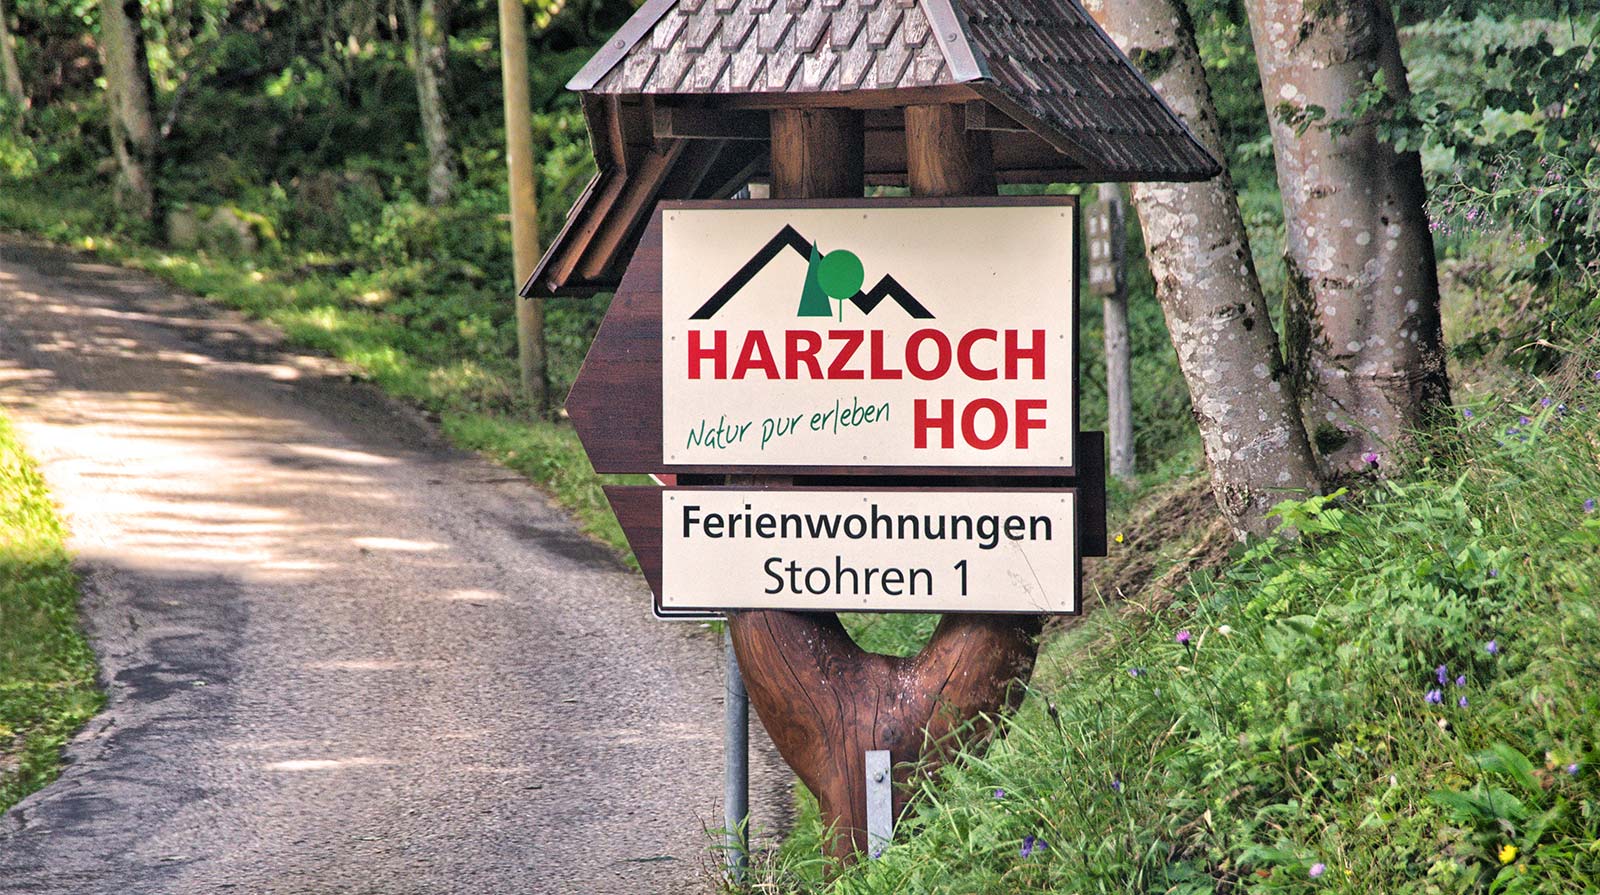 Harzlochhof